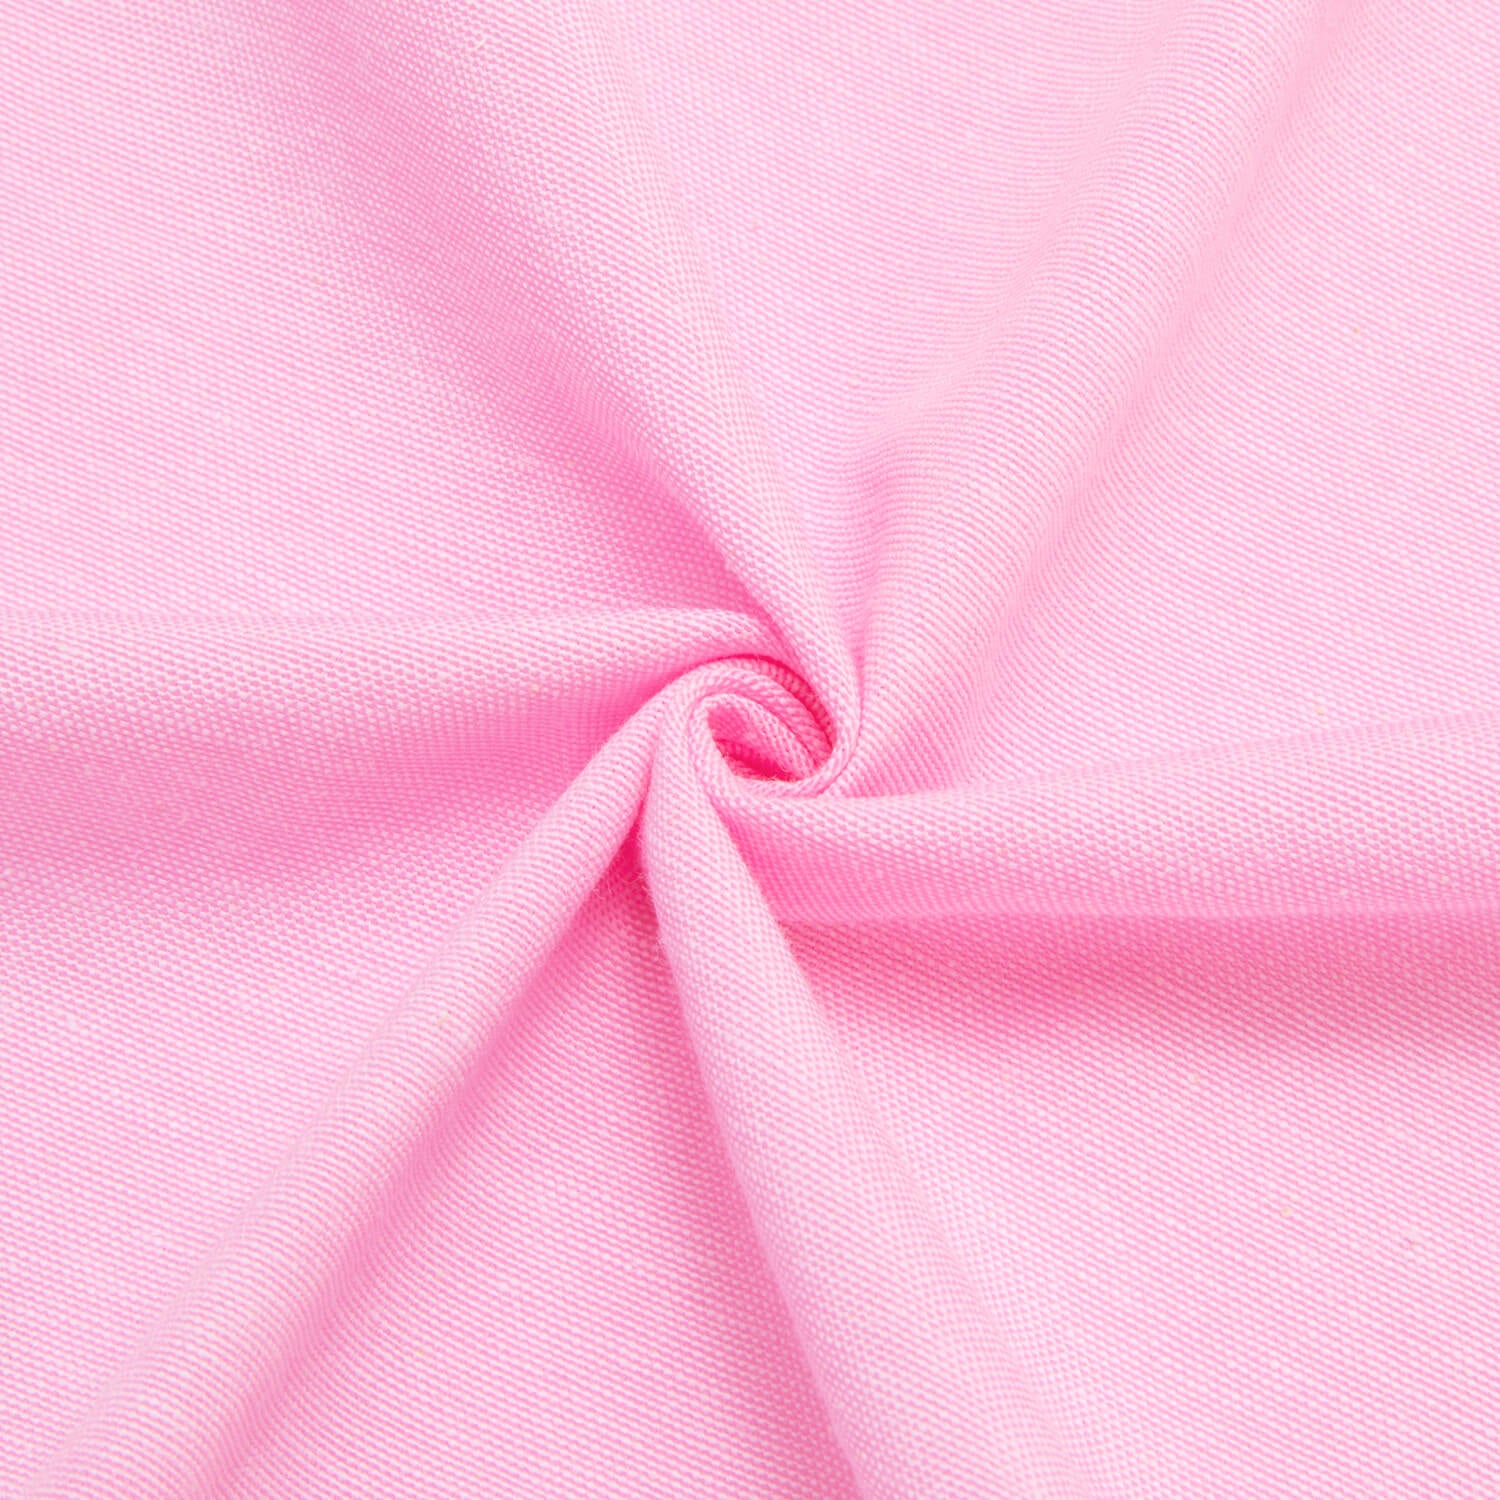 Hi-Tie Button Down Shirt Light Pink Solid Silk Men's Dress Shirt